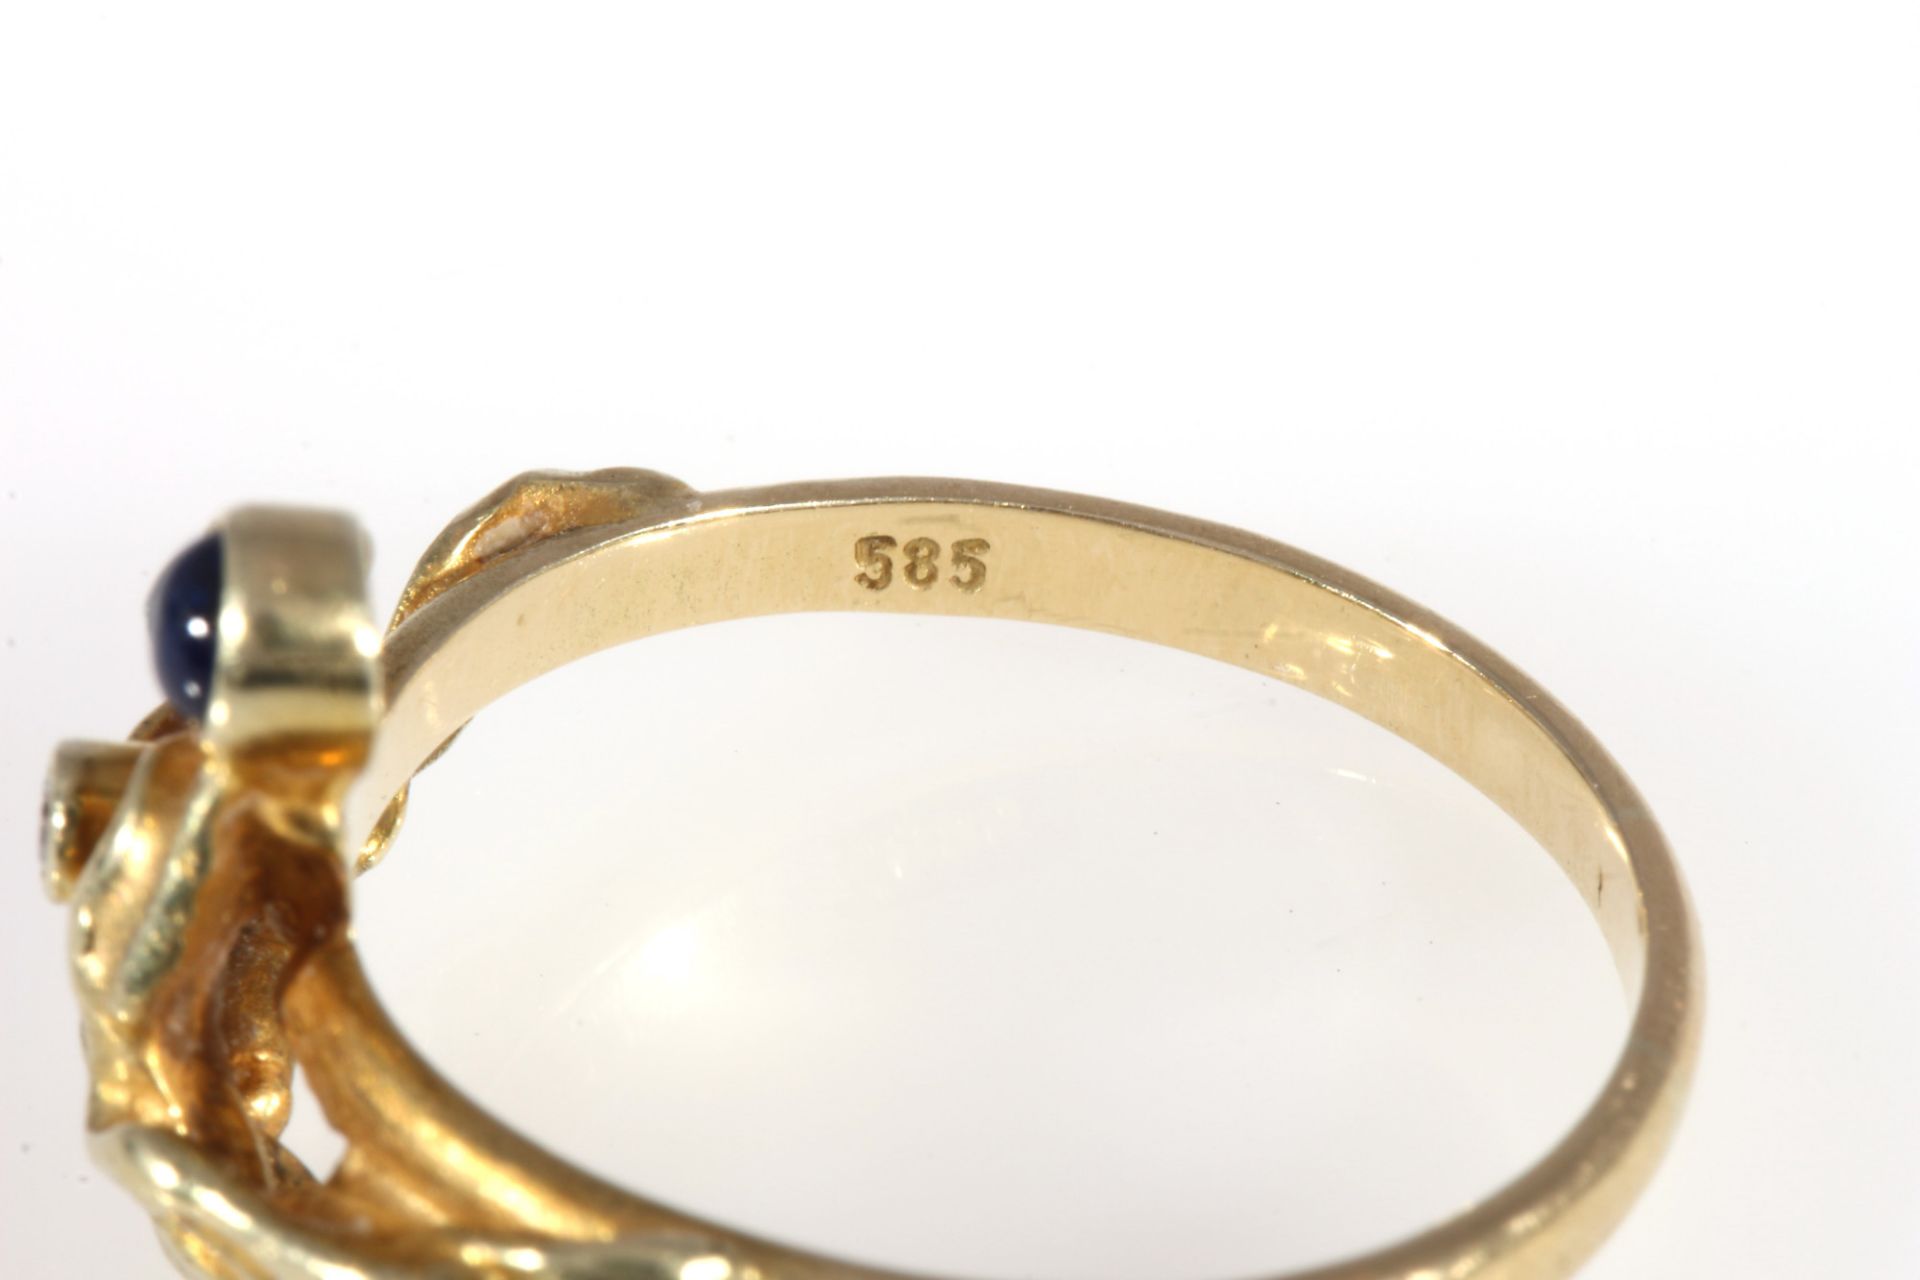 585 Gold Ring mit Saphiren und Brillanten, 14K gold ring sapphires and diamonds, - Image 4 of 4